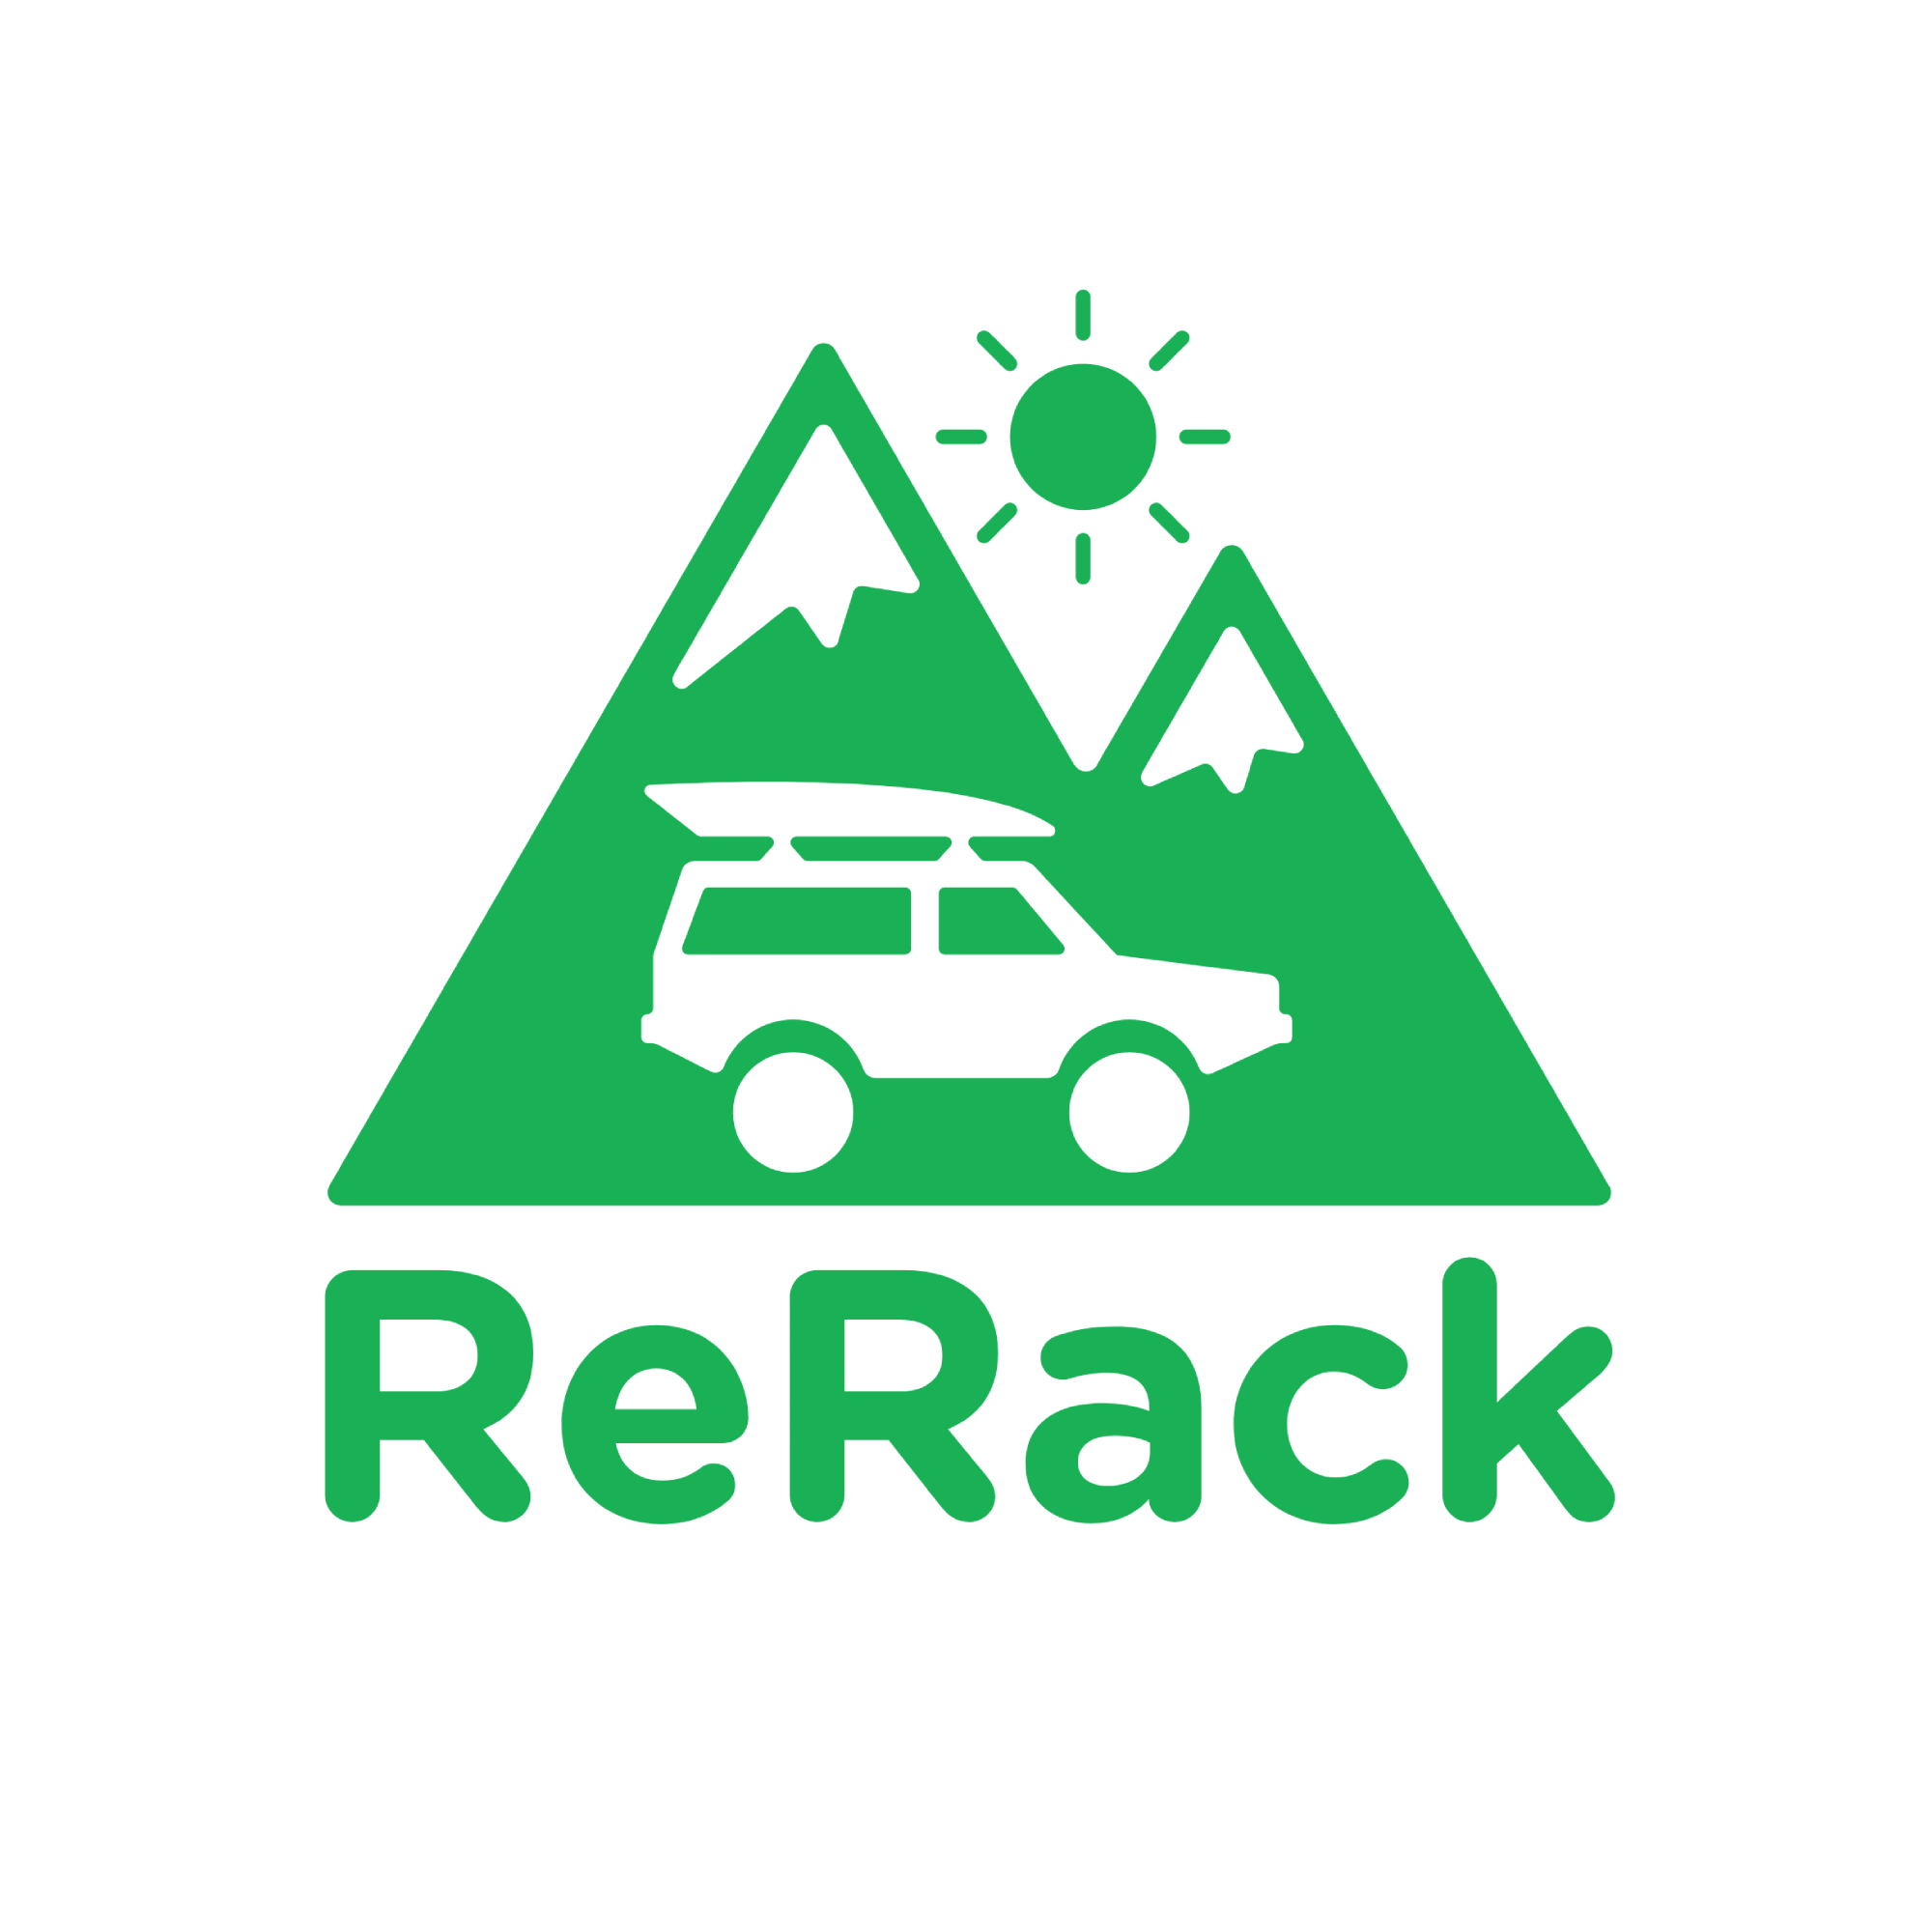 ReRack logo